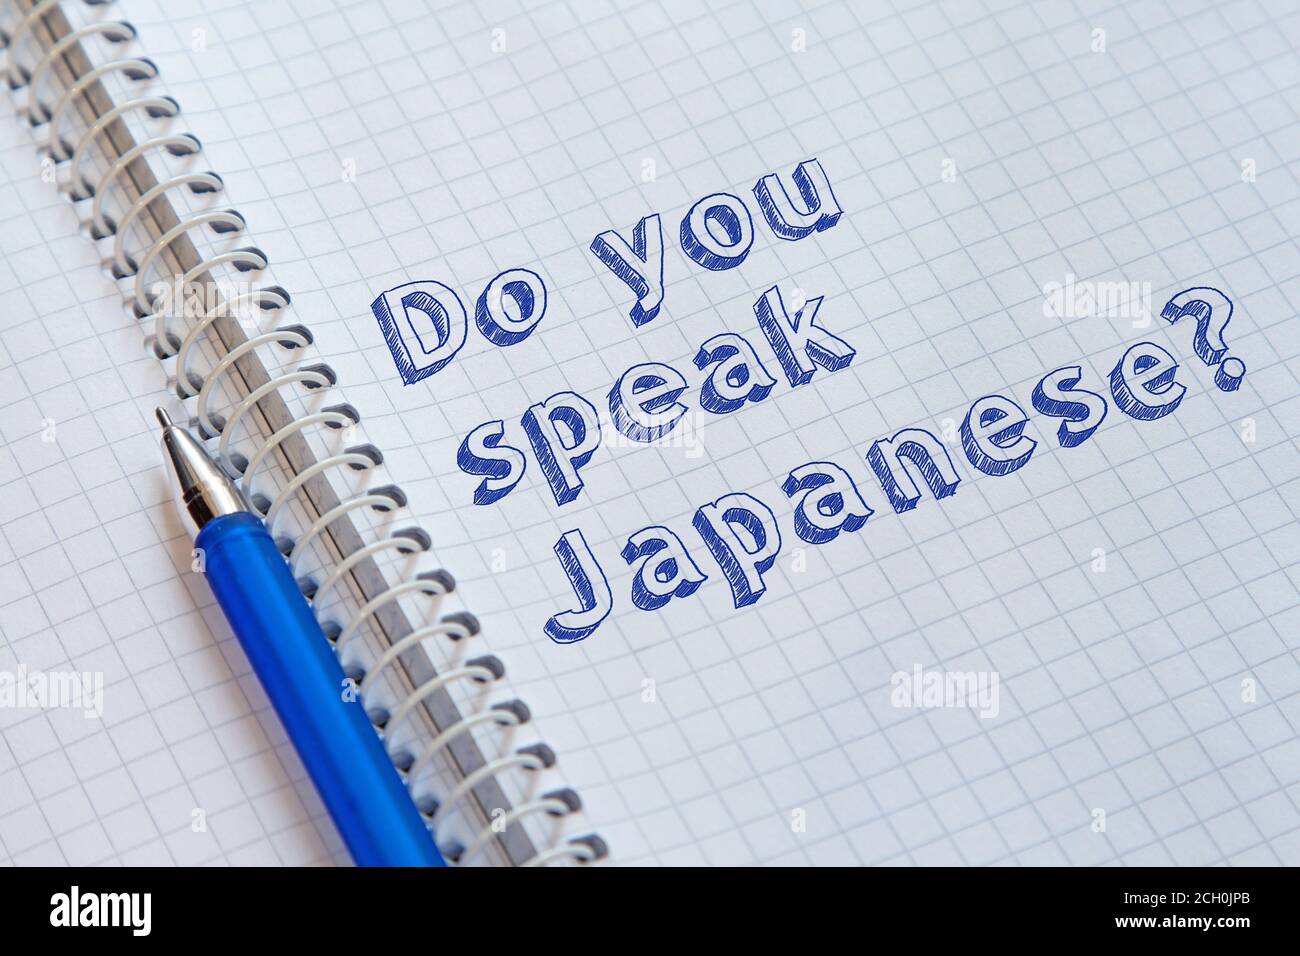 Sprechen sie Japanisch? Handgeschriebener Text auf Notizbuch Stockfoto